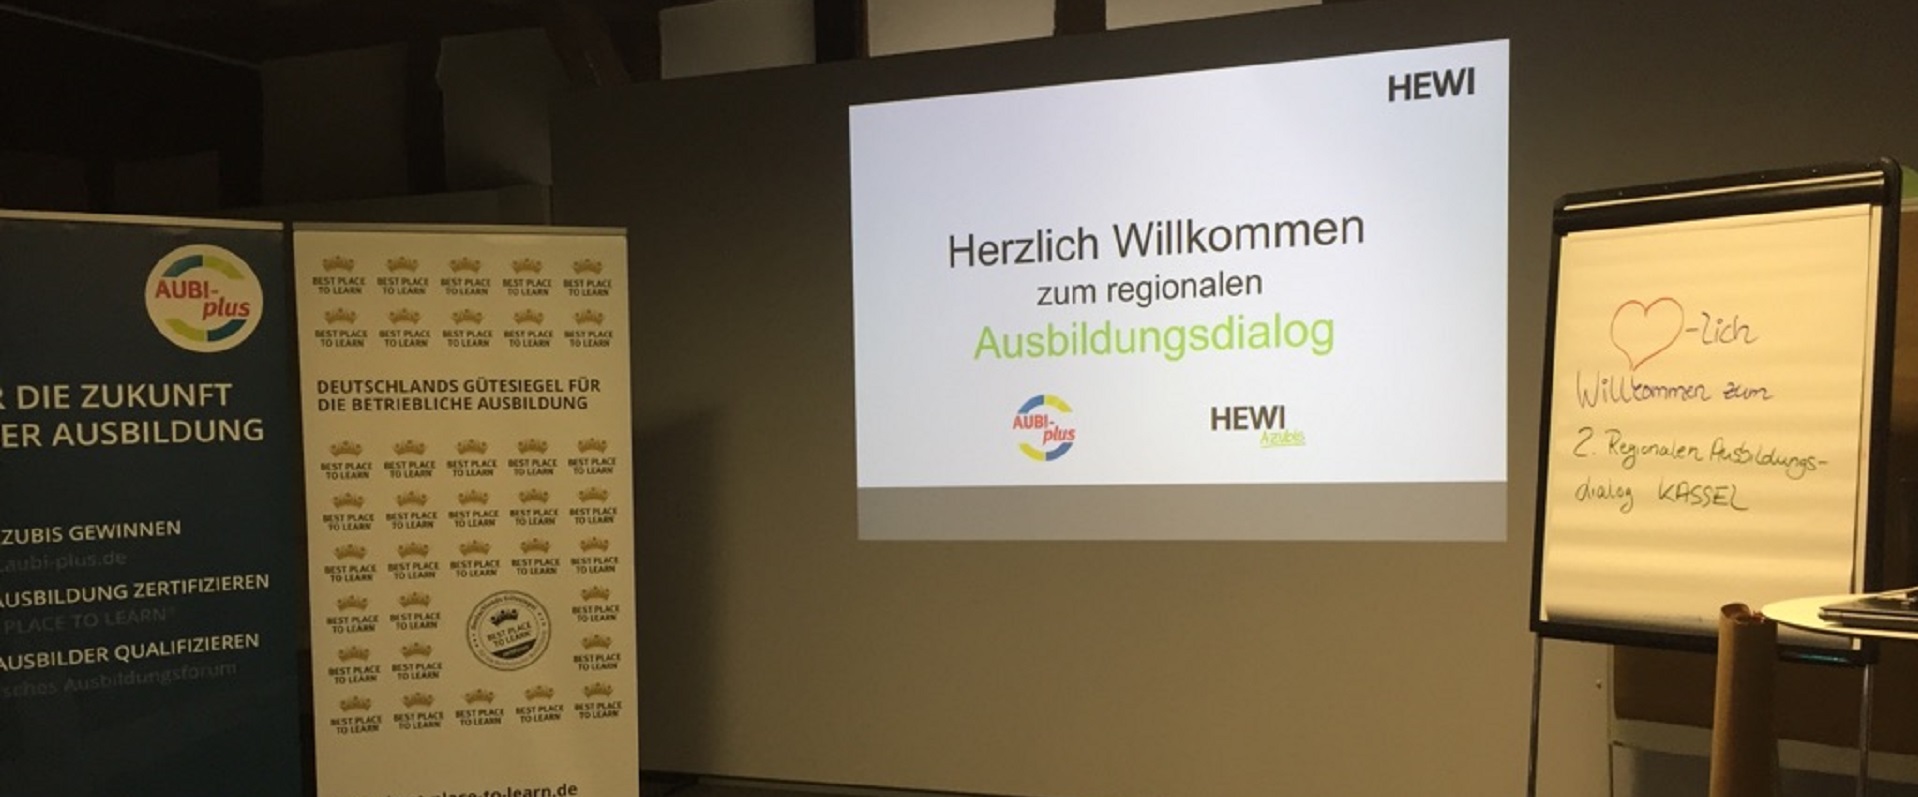 Fachwerk-Ambiente im Schulungsraum der HEWI Heinrich Wilke GmbH